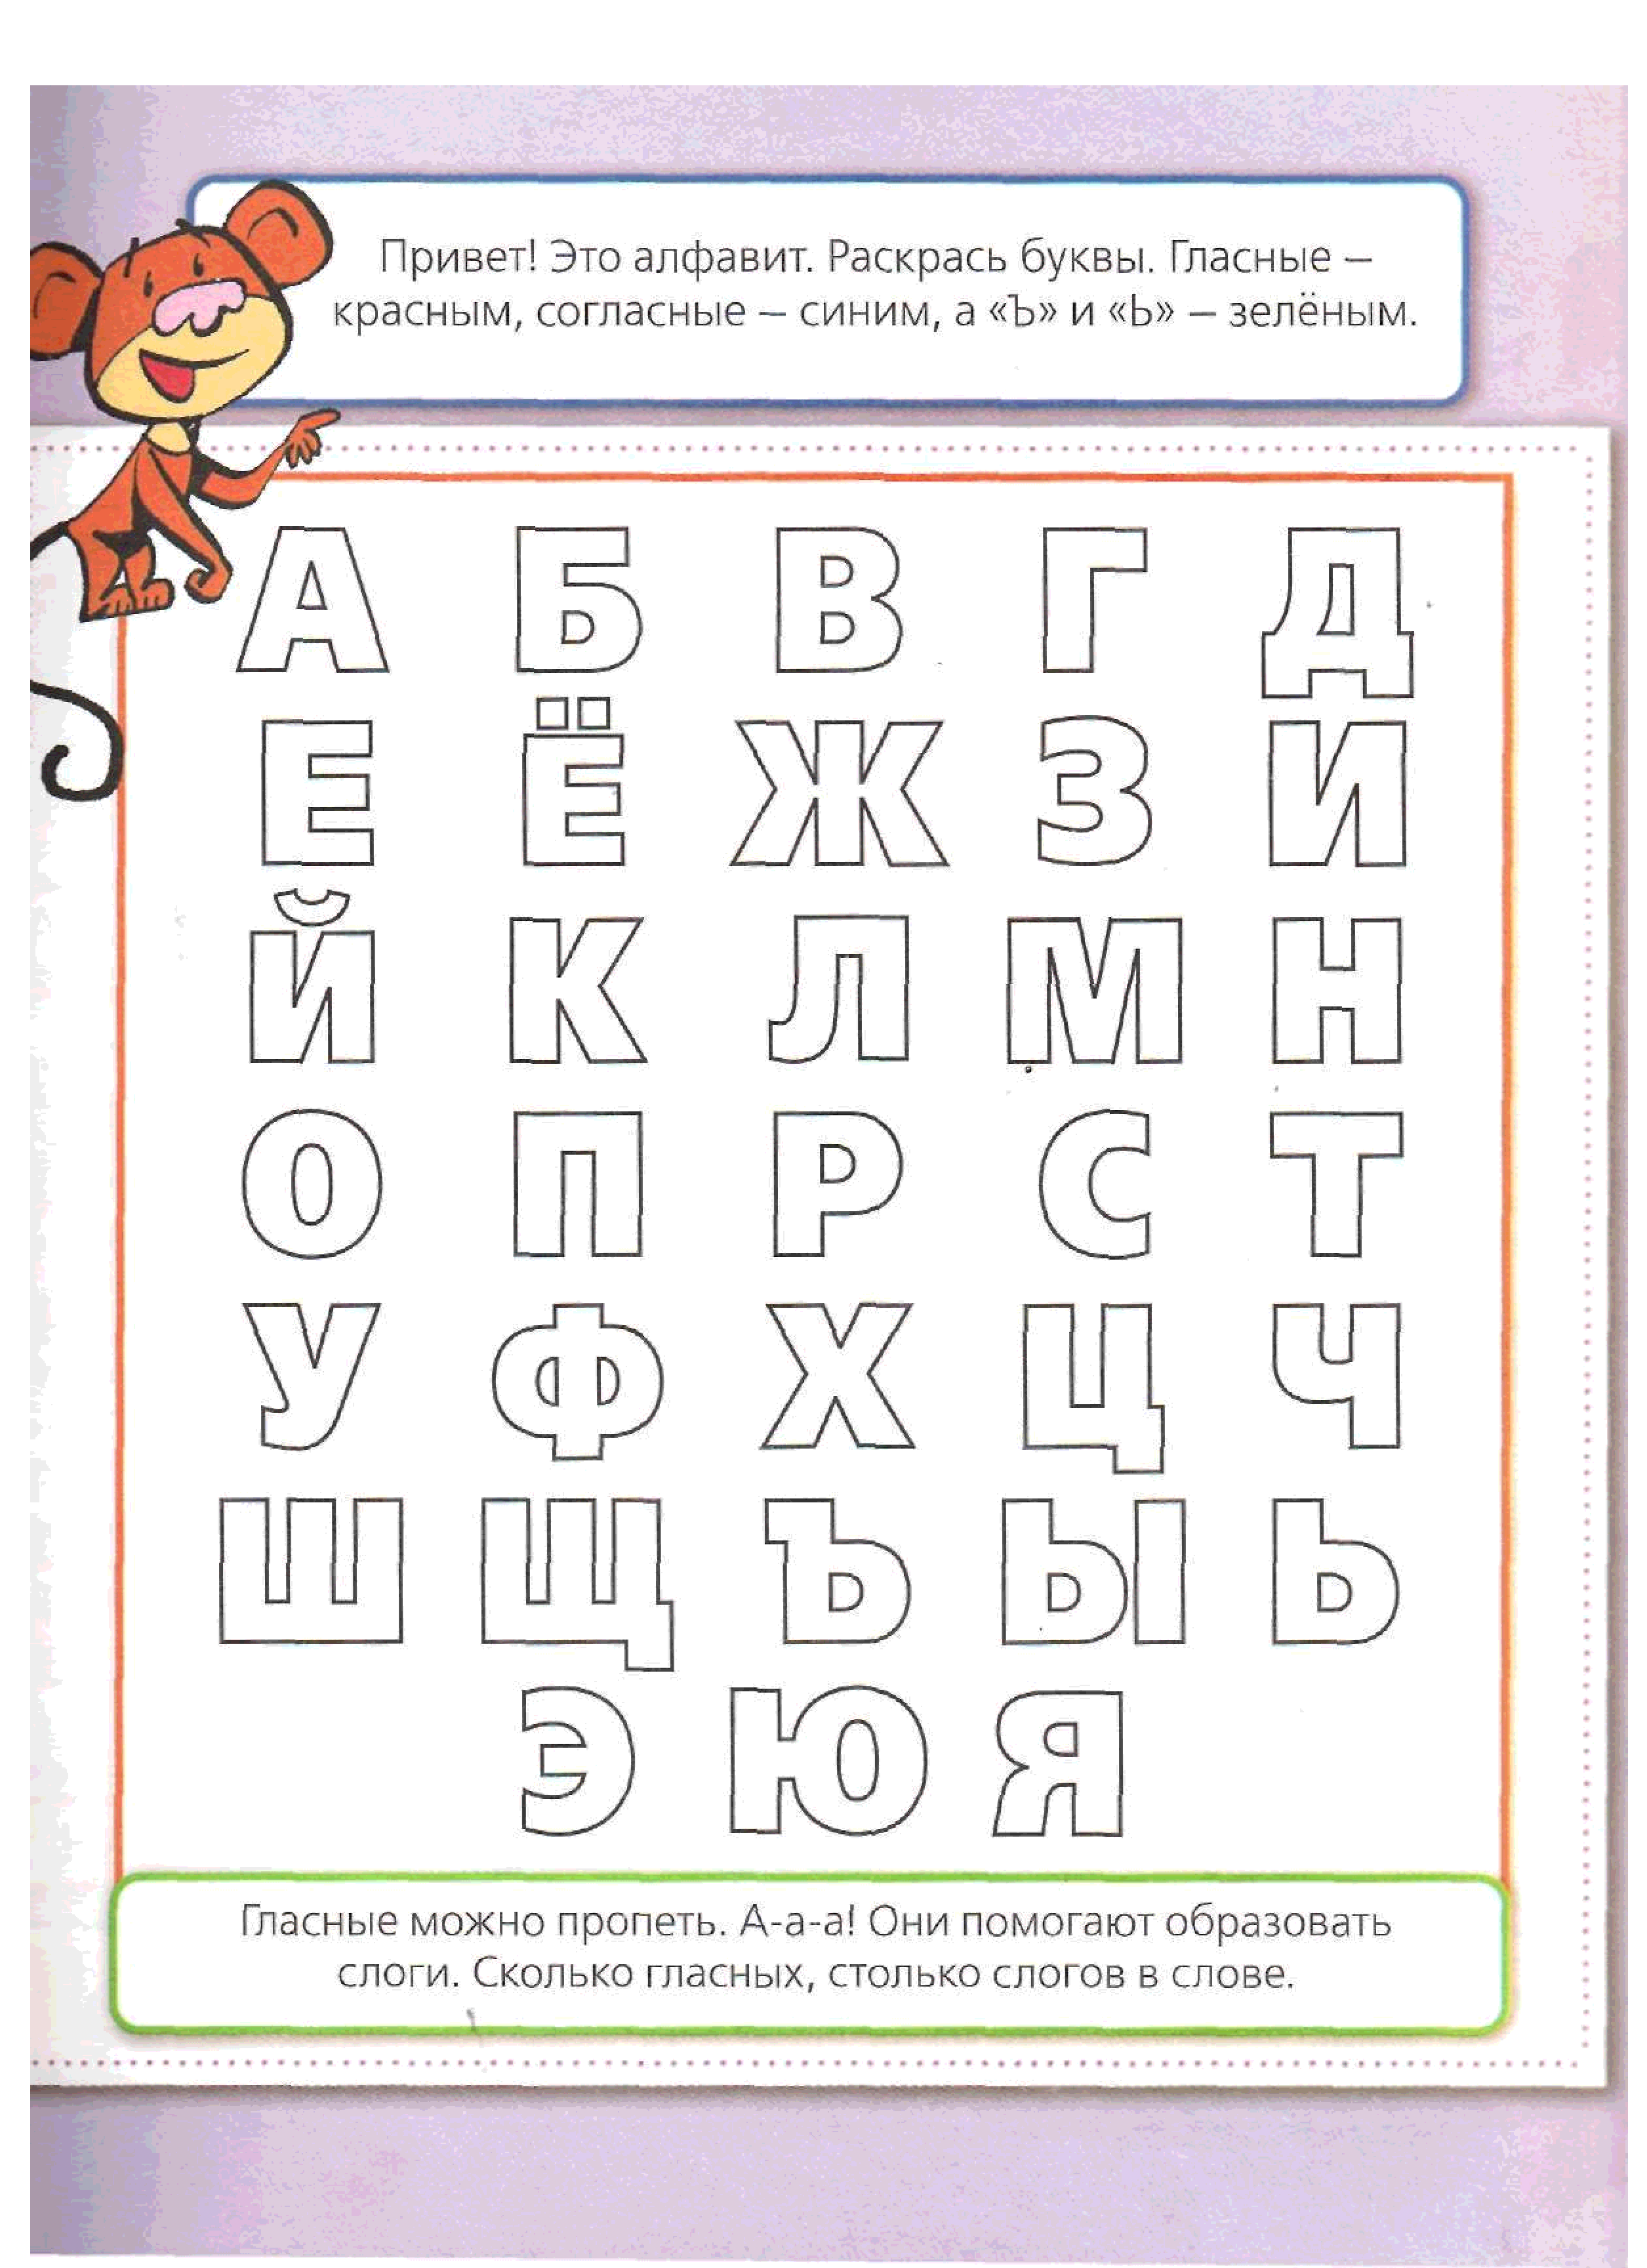 Научить ребенка буквам быстро. Изучение алфавита для дошкольников. Алфавит задания для дошкольников. Изучение букв для детей 3 лет. Задания для детей 5 лет алфавит.